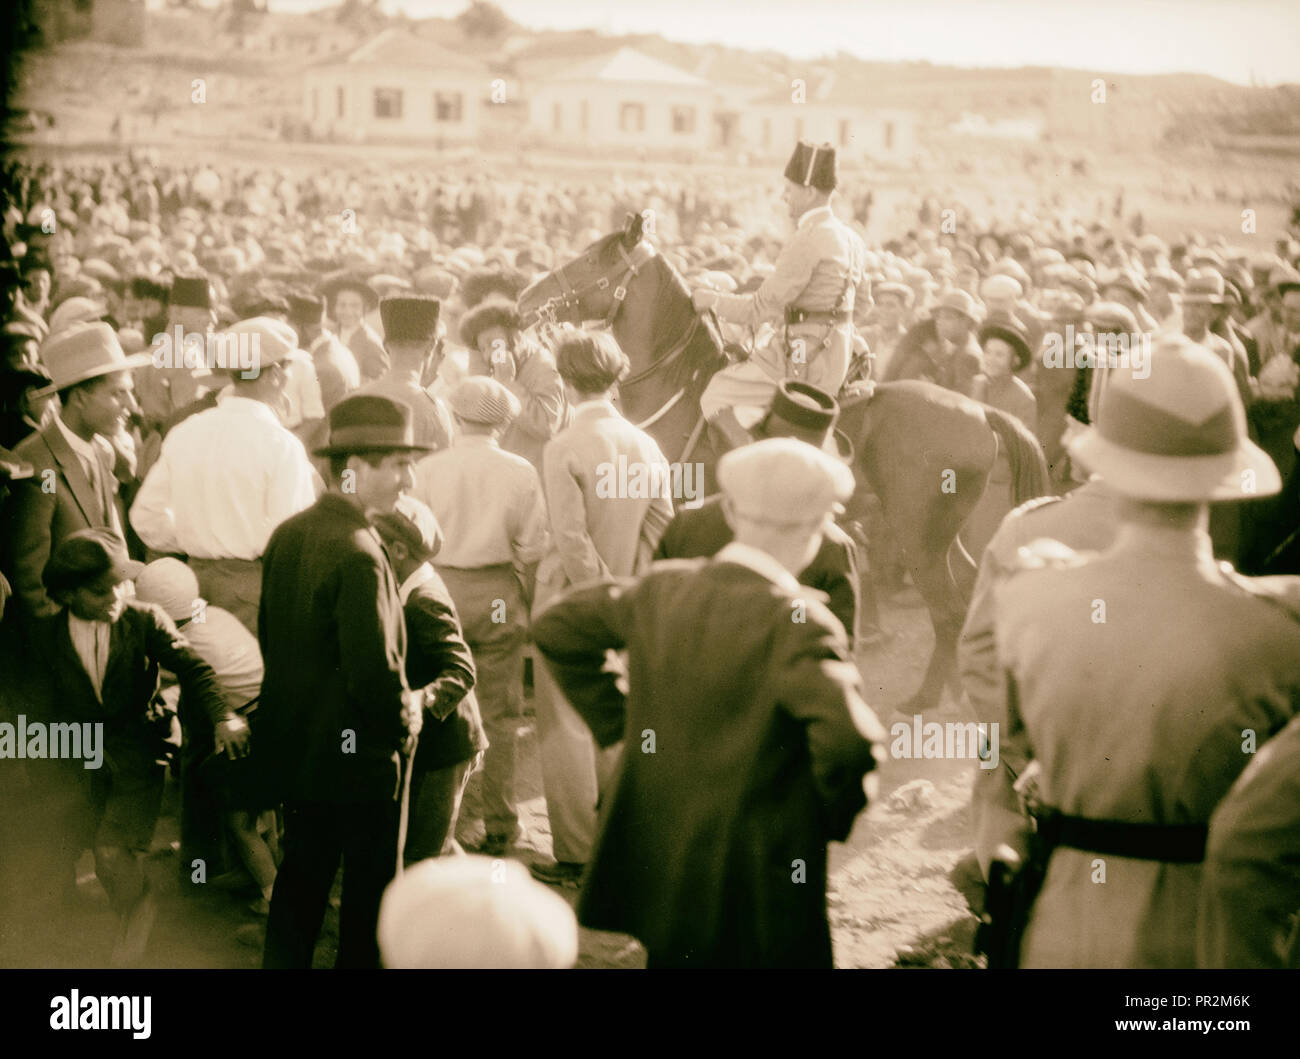 Injerencia policial ortodoxa de intentar romper el macabeo, juego de fútbol 1934, Oriente Medio, Israel y/o Palestina Foto de stock